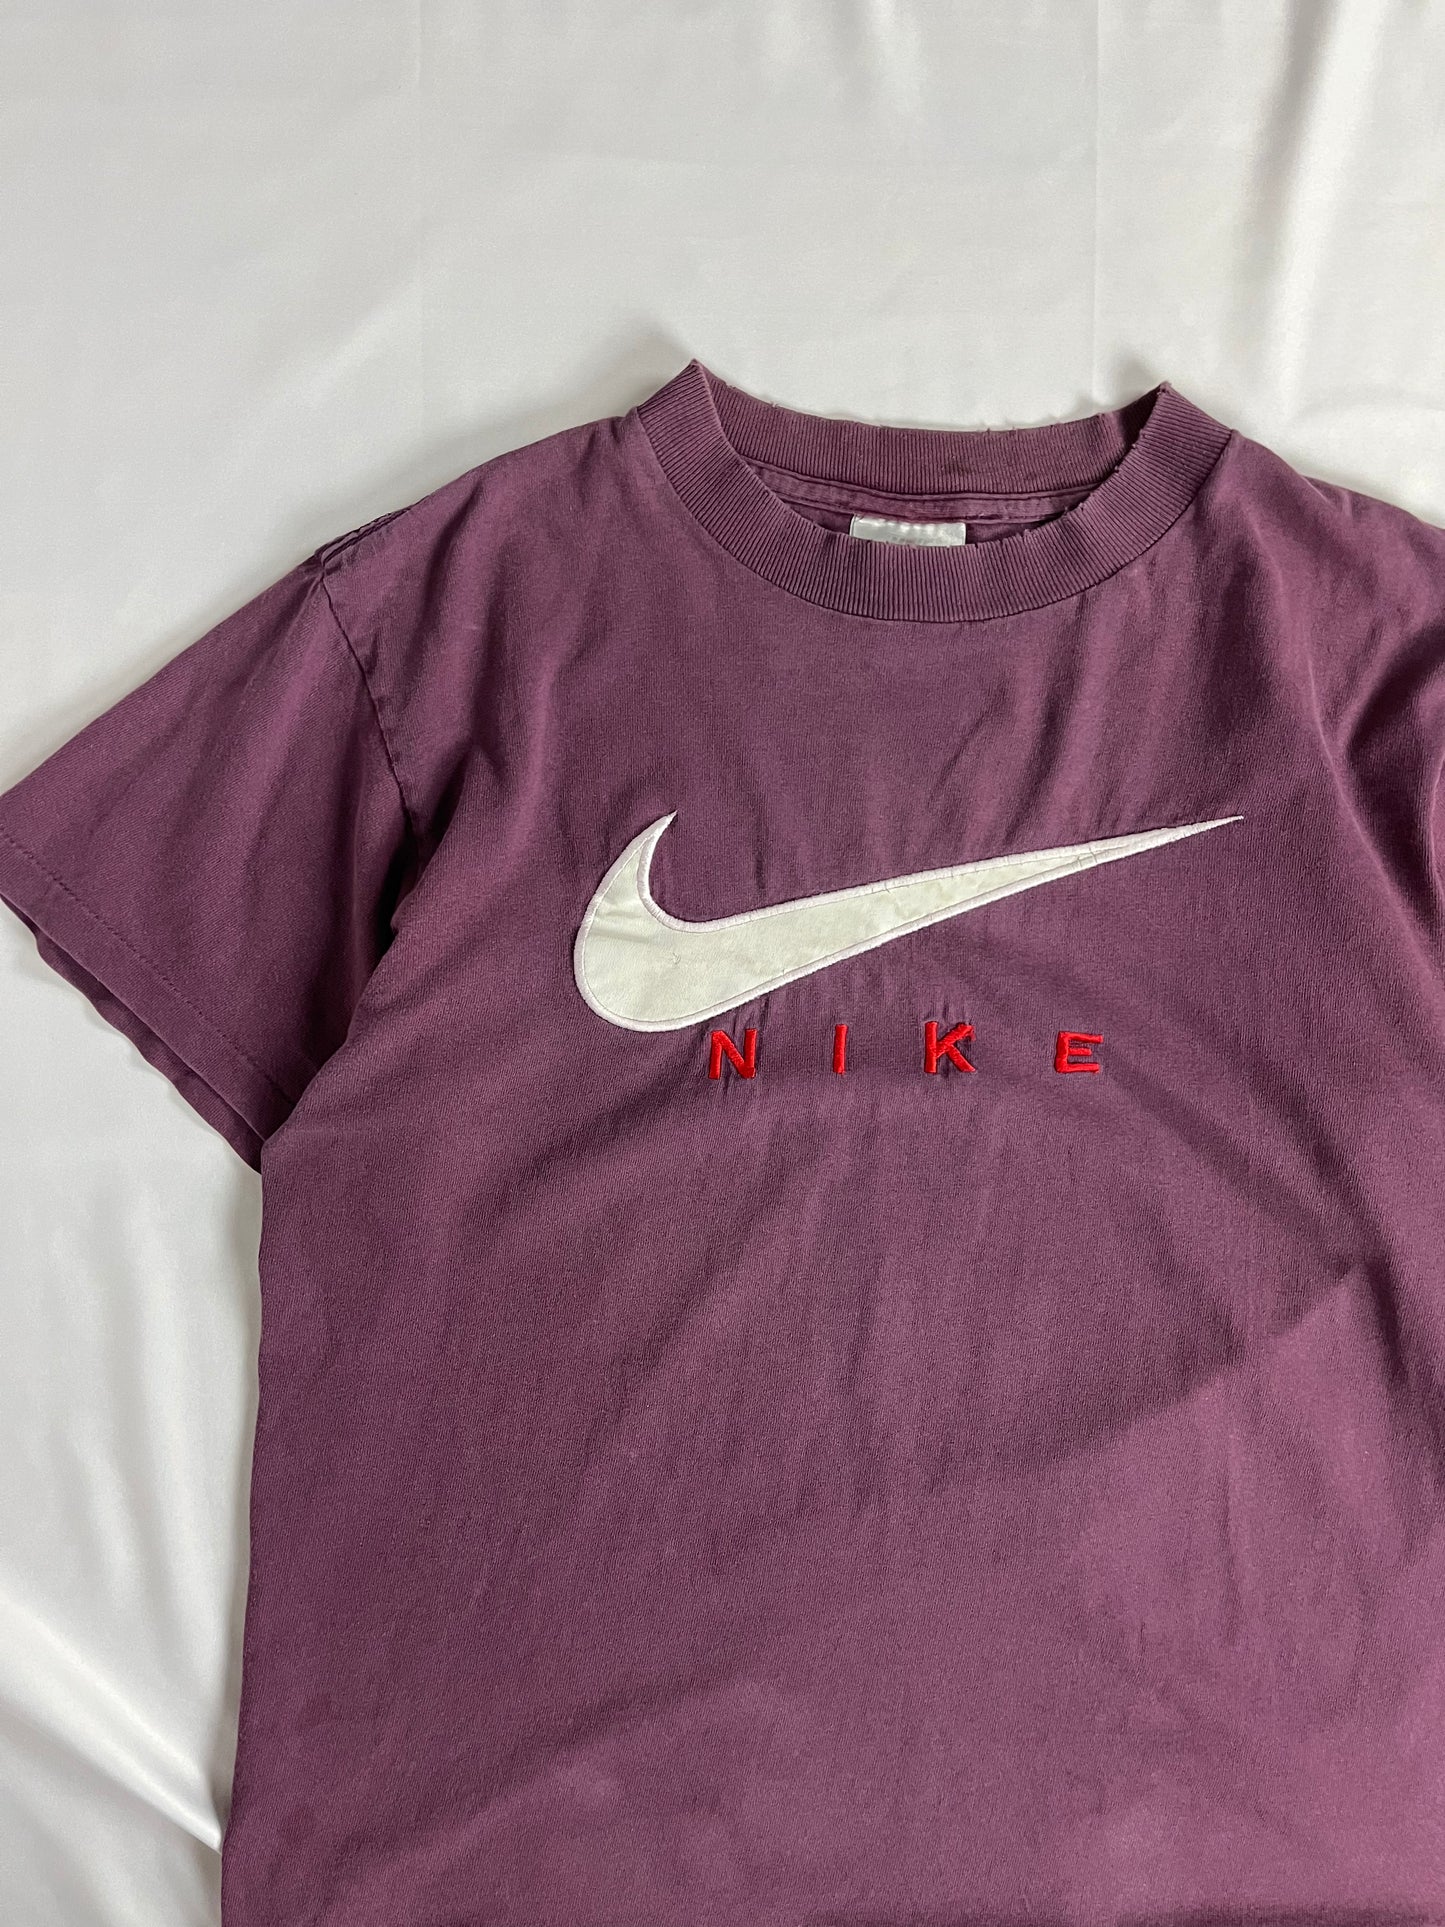 90s Nike Big Swoosh Purple Tee